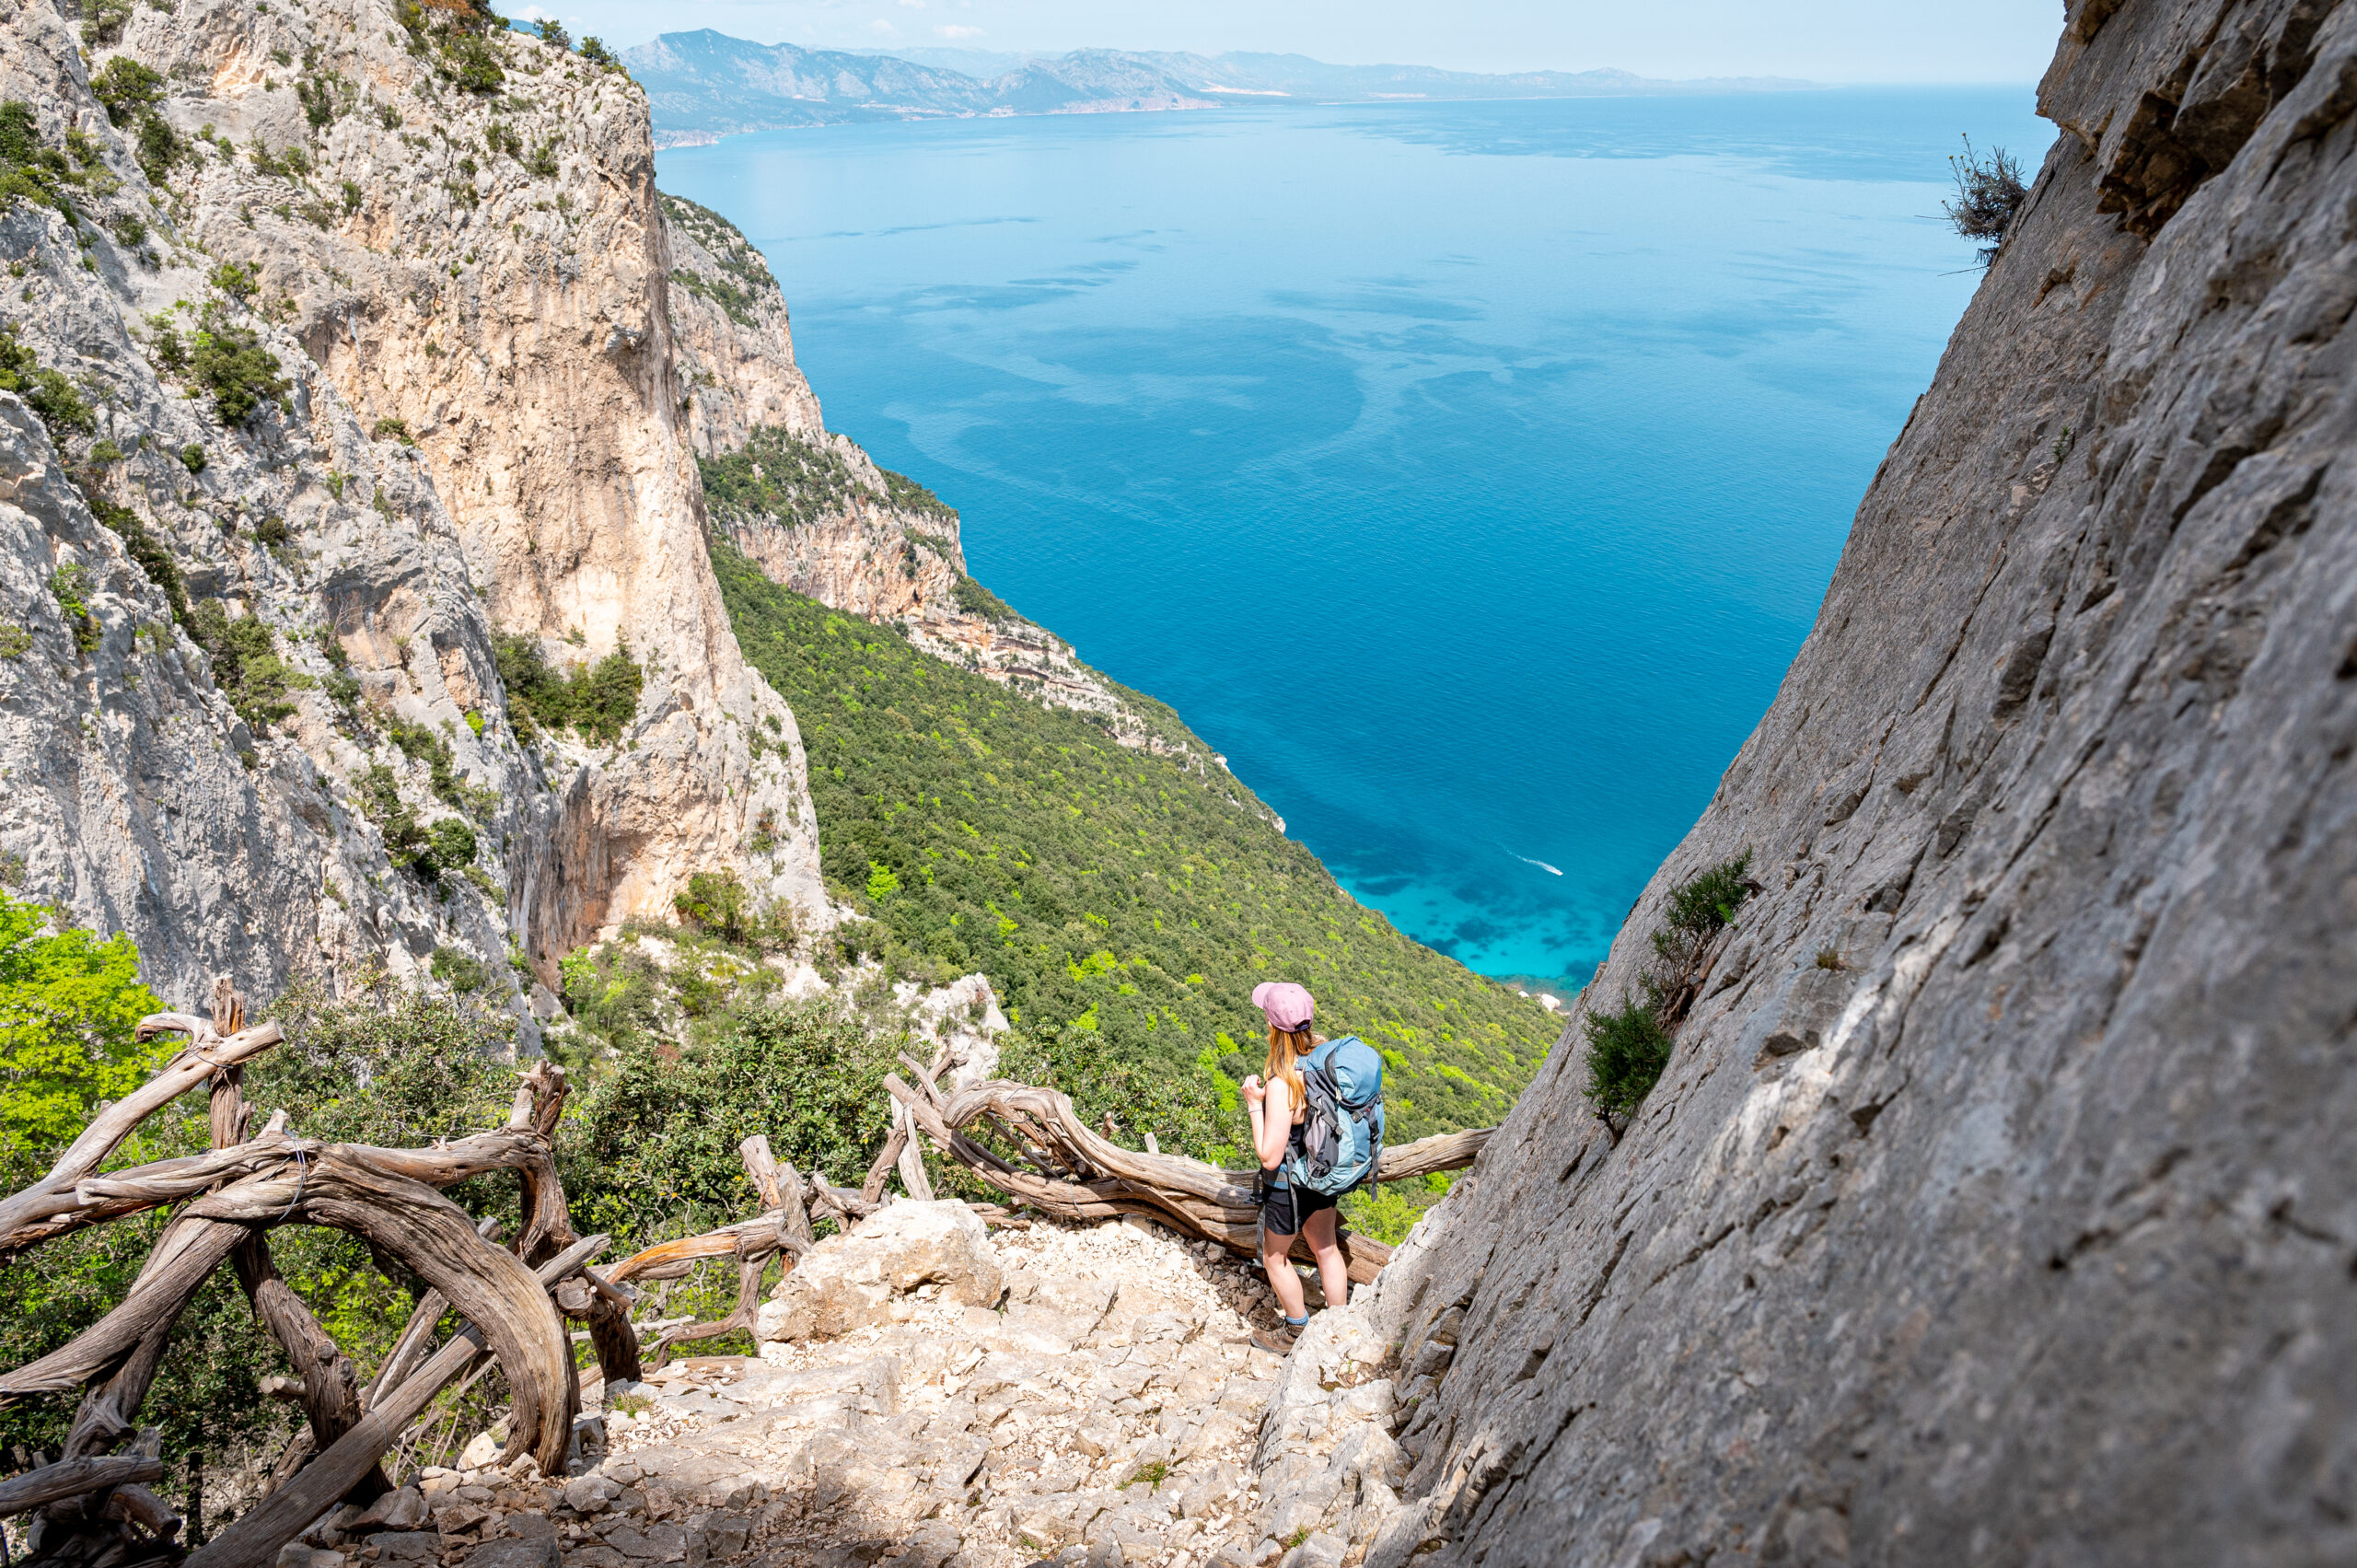 Sardinia Hike Adventure east coast hike highlight